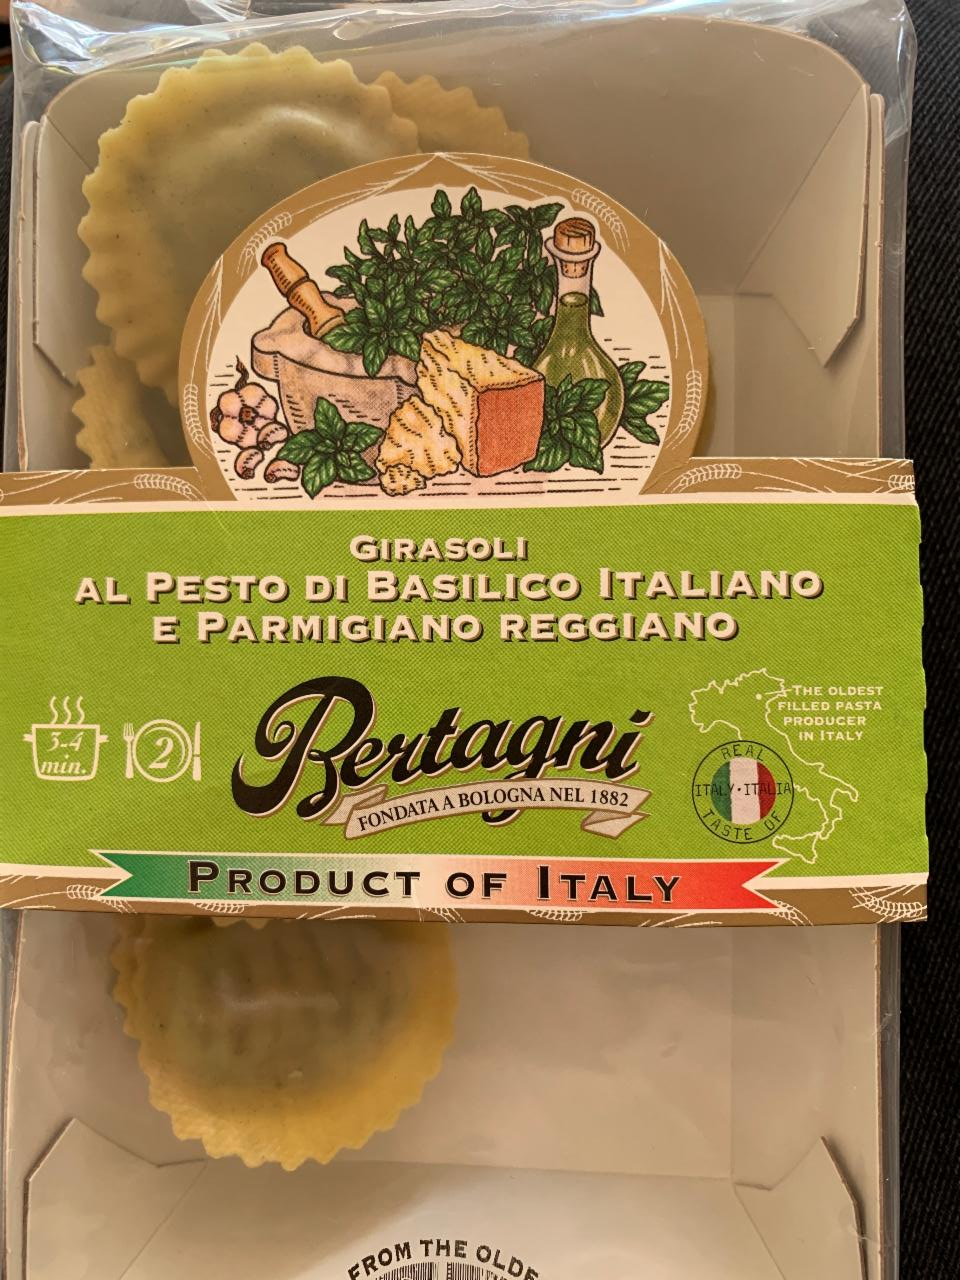 Fotografie - Girasoli Al Pesto di Basilico Italiano e Parmigiano Reggiano Berrtagni